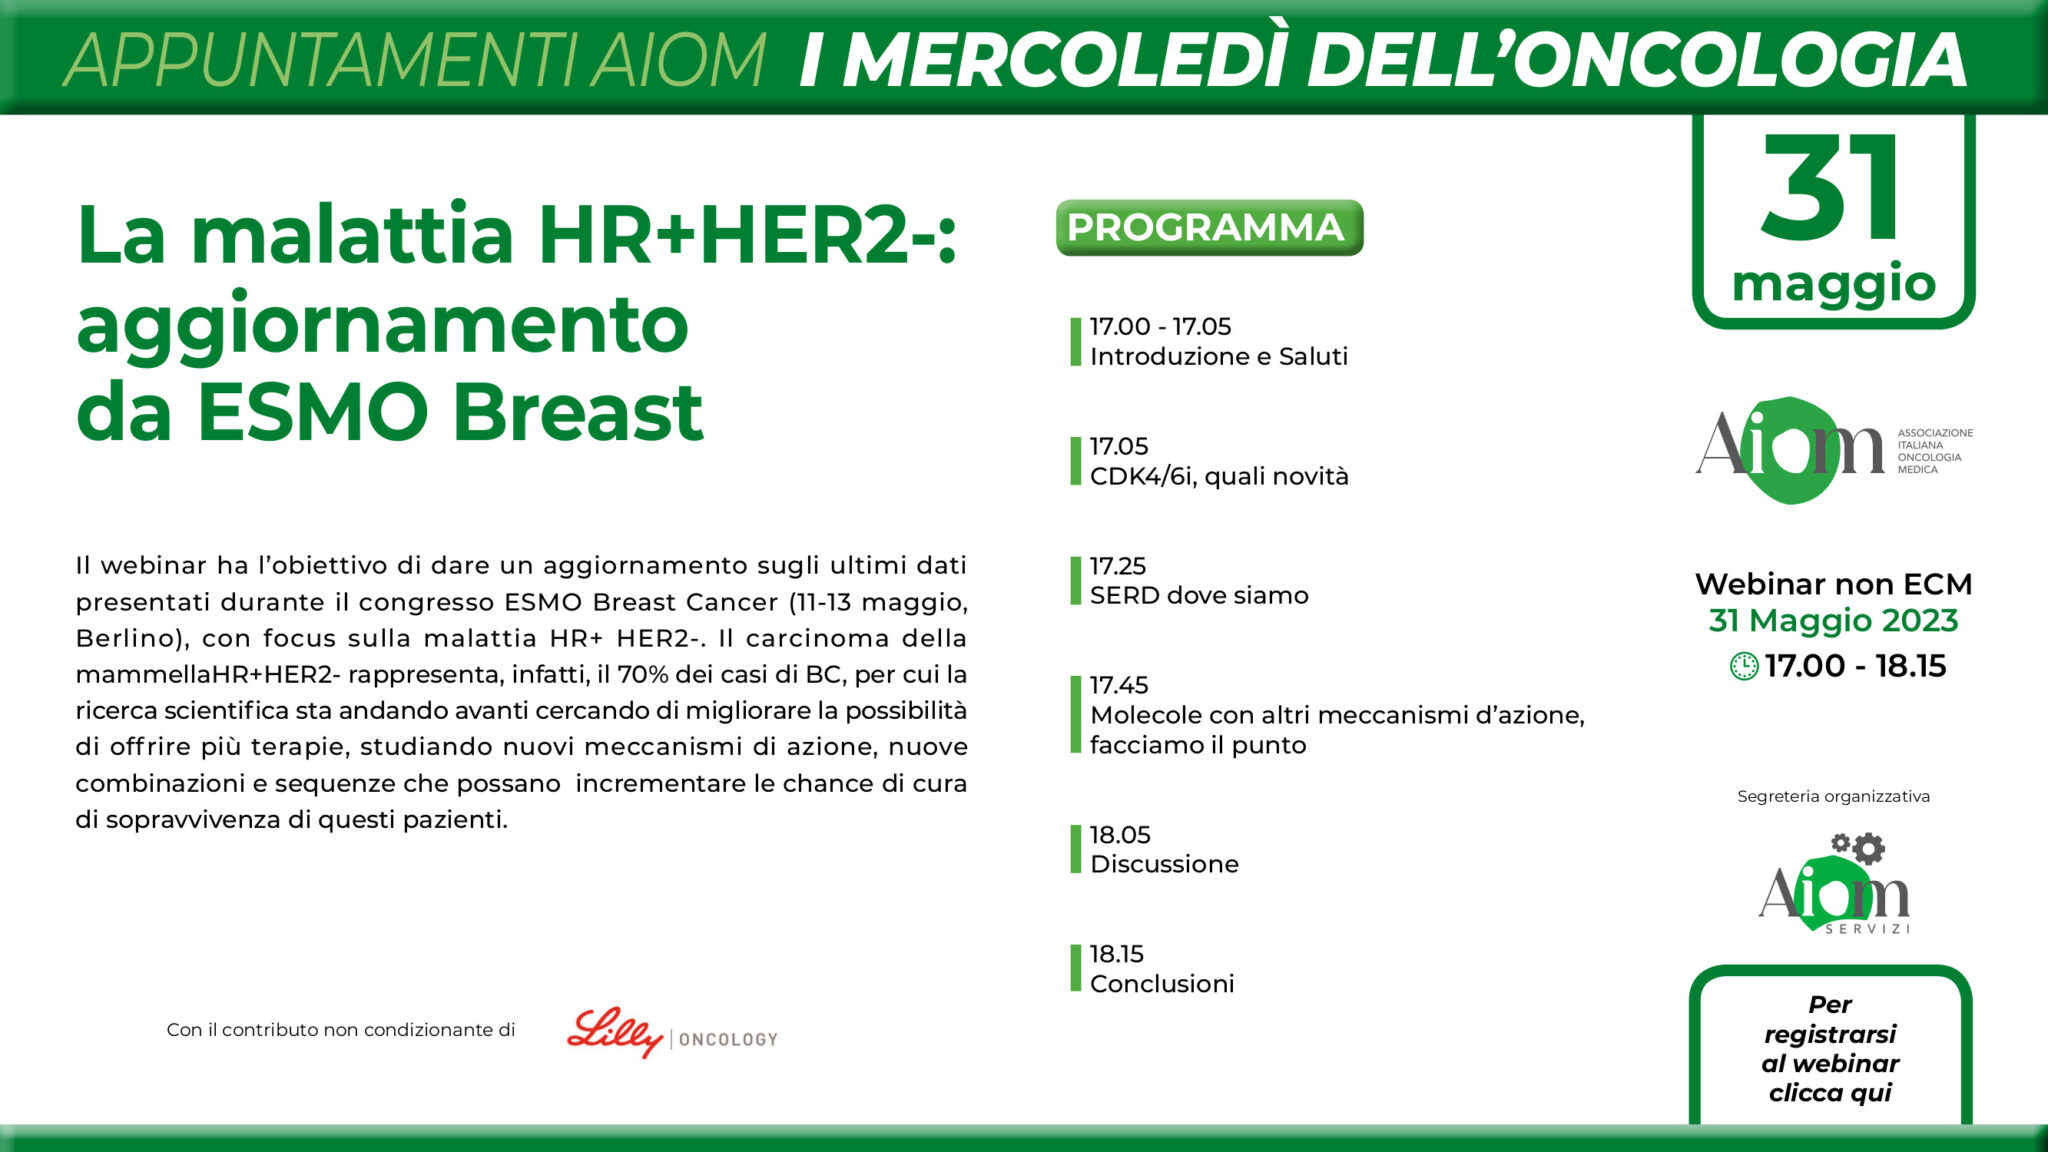 La malattia HR+HER2-: aggiornamento da ESMO Breast